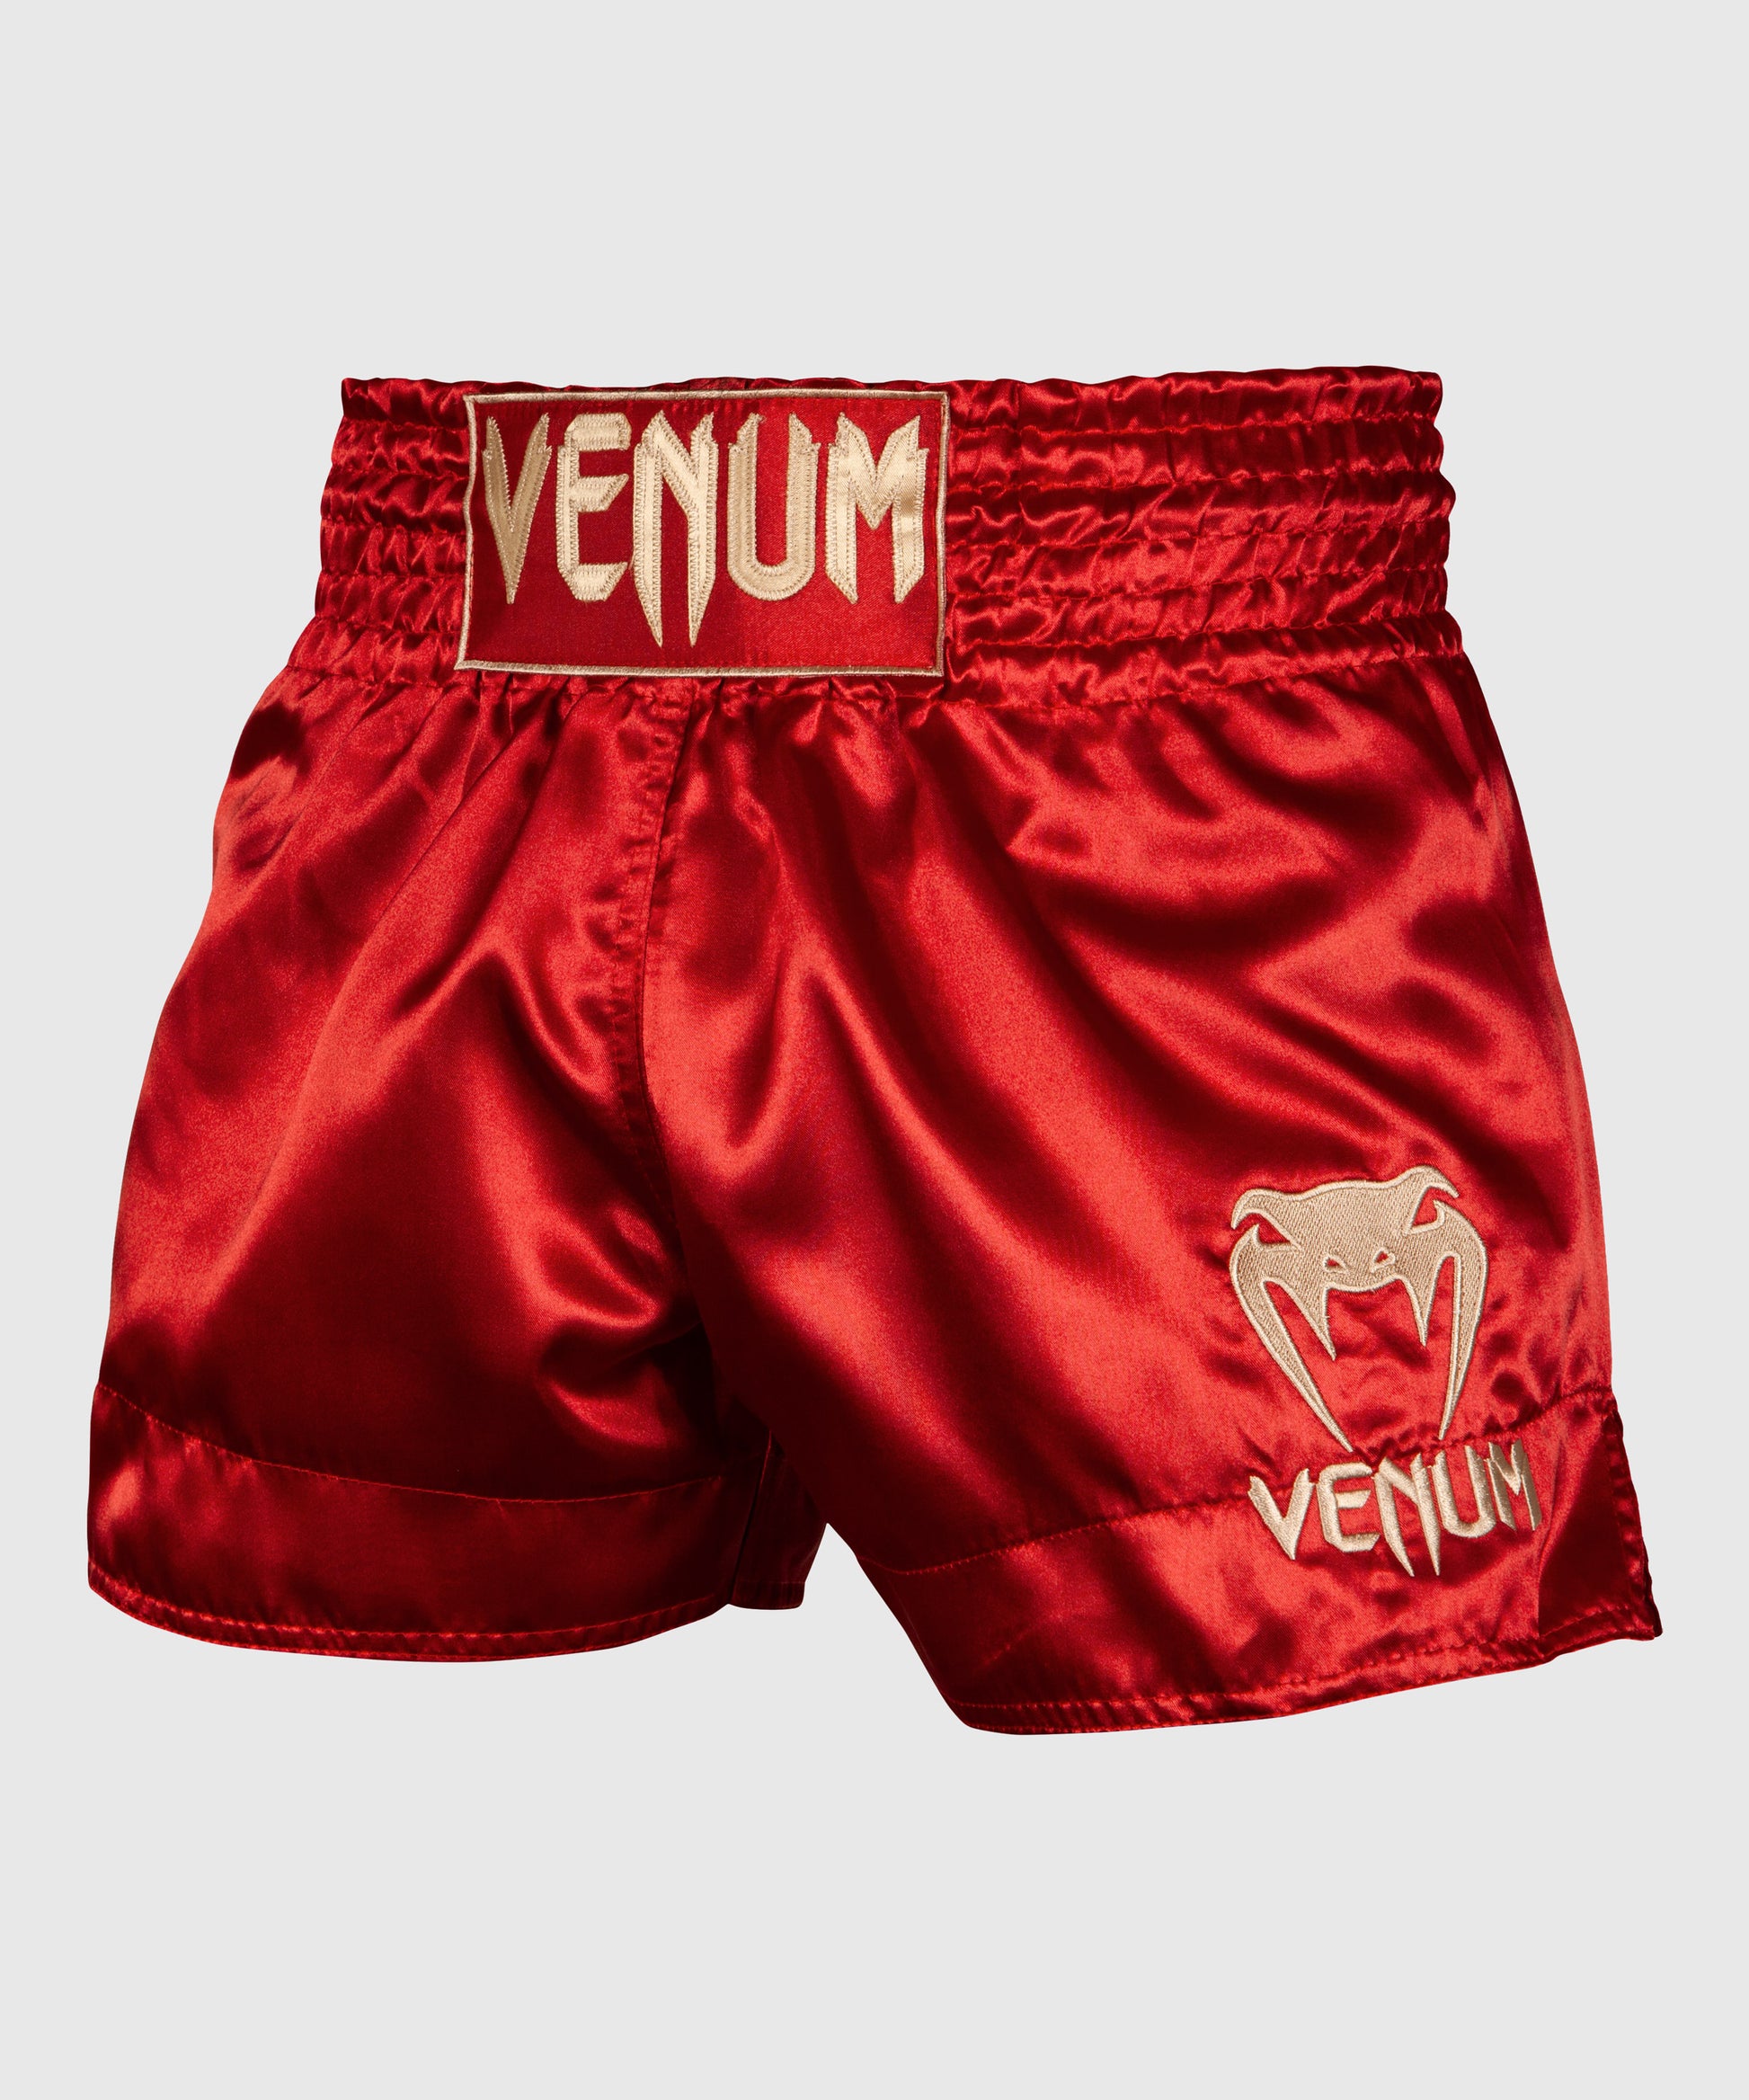 Short de MMA homme – Venum France